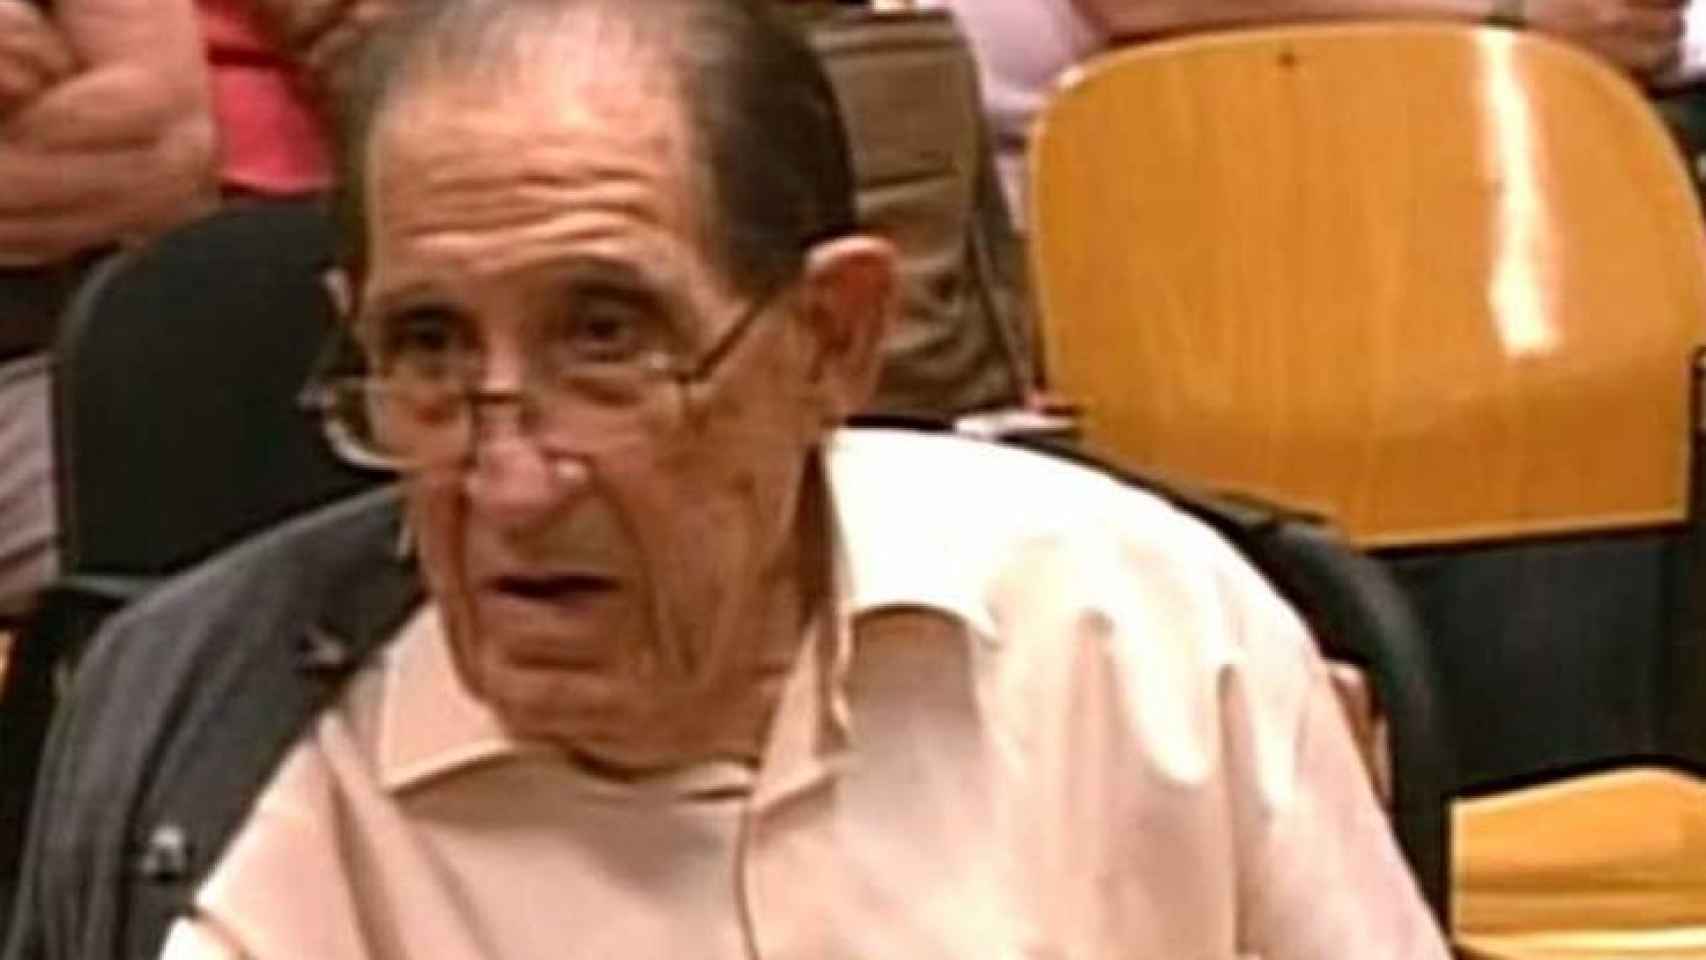 El doctor Eduardo Vela durante el juicio.